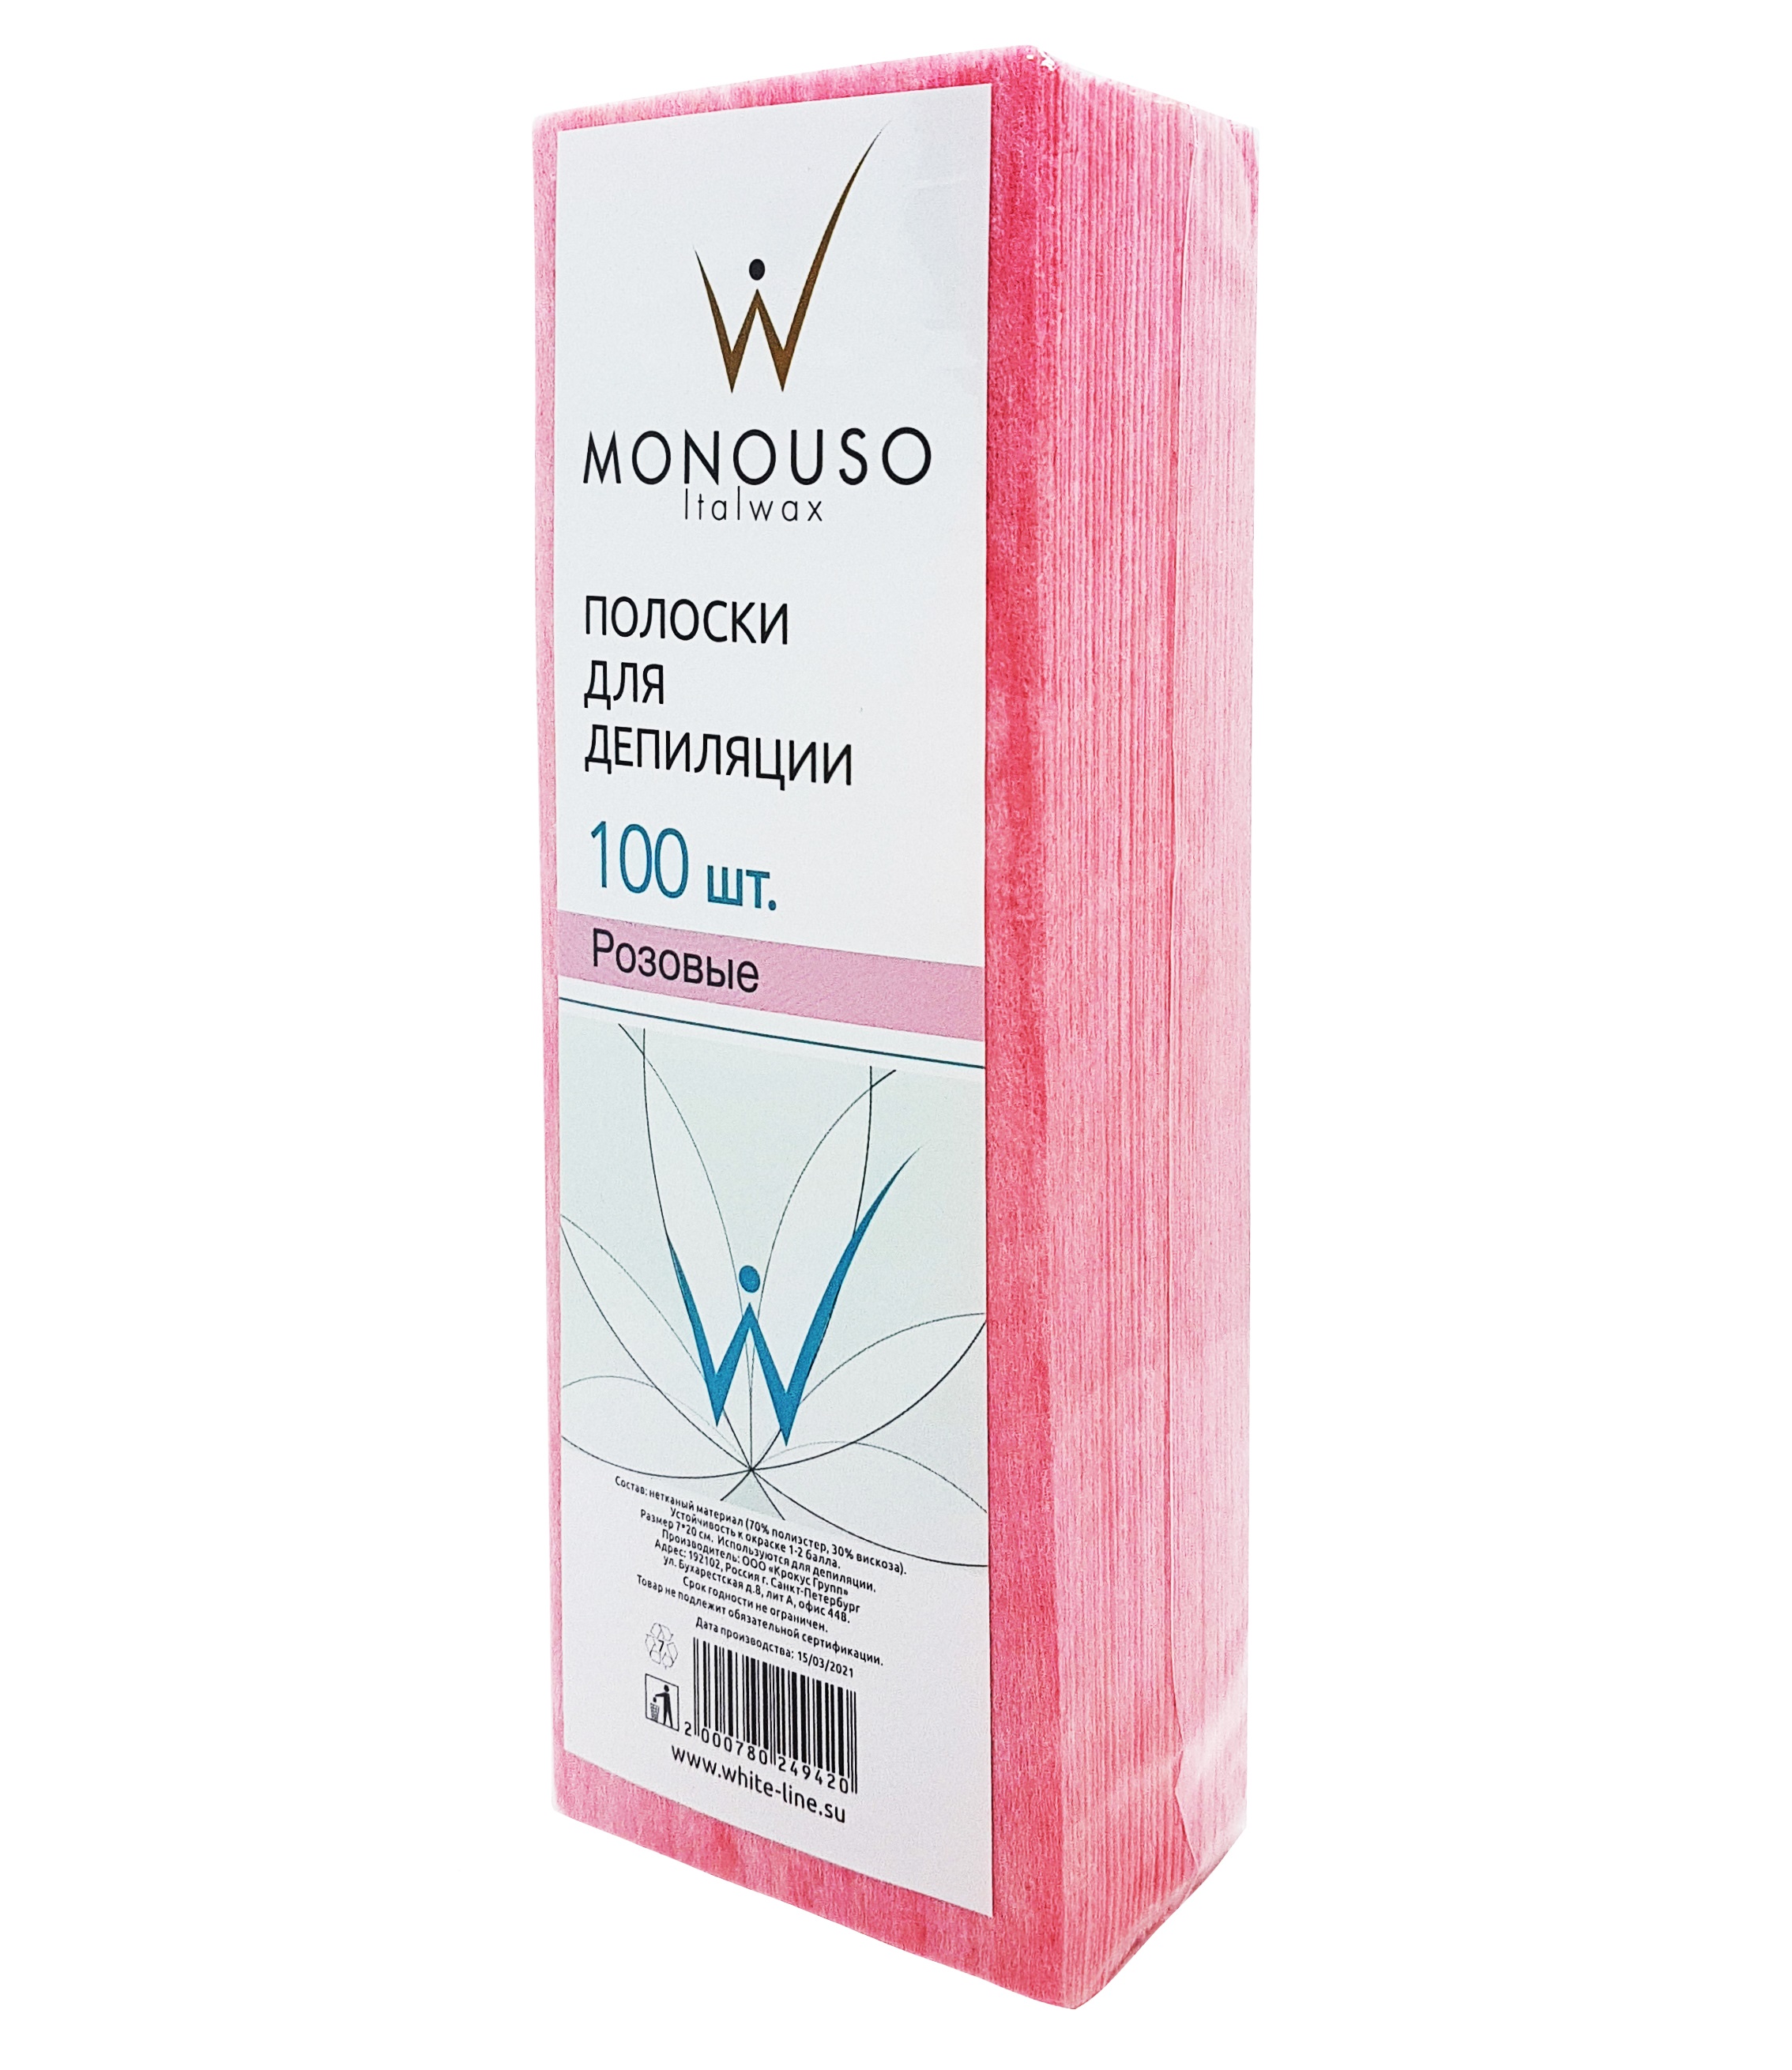 Полоска для депиляции 7х20 MONOUSO №100 штук розовая